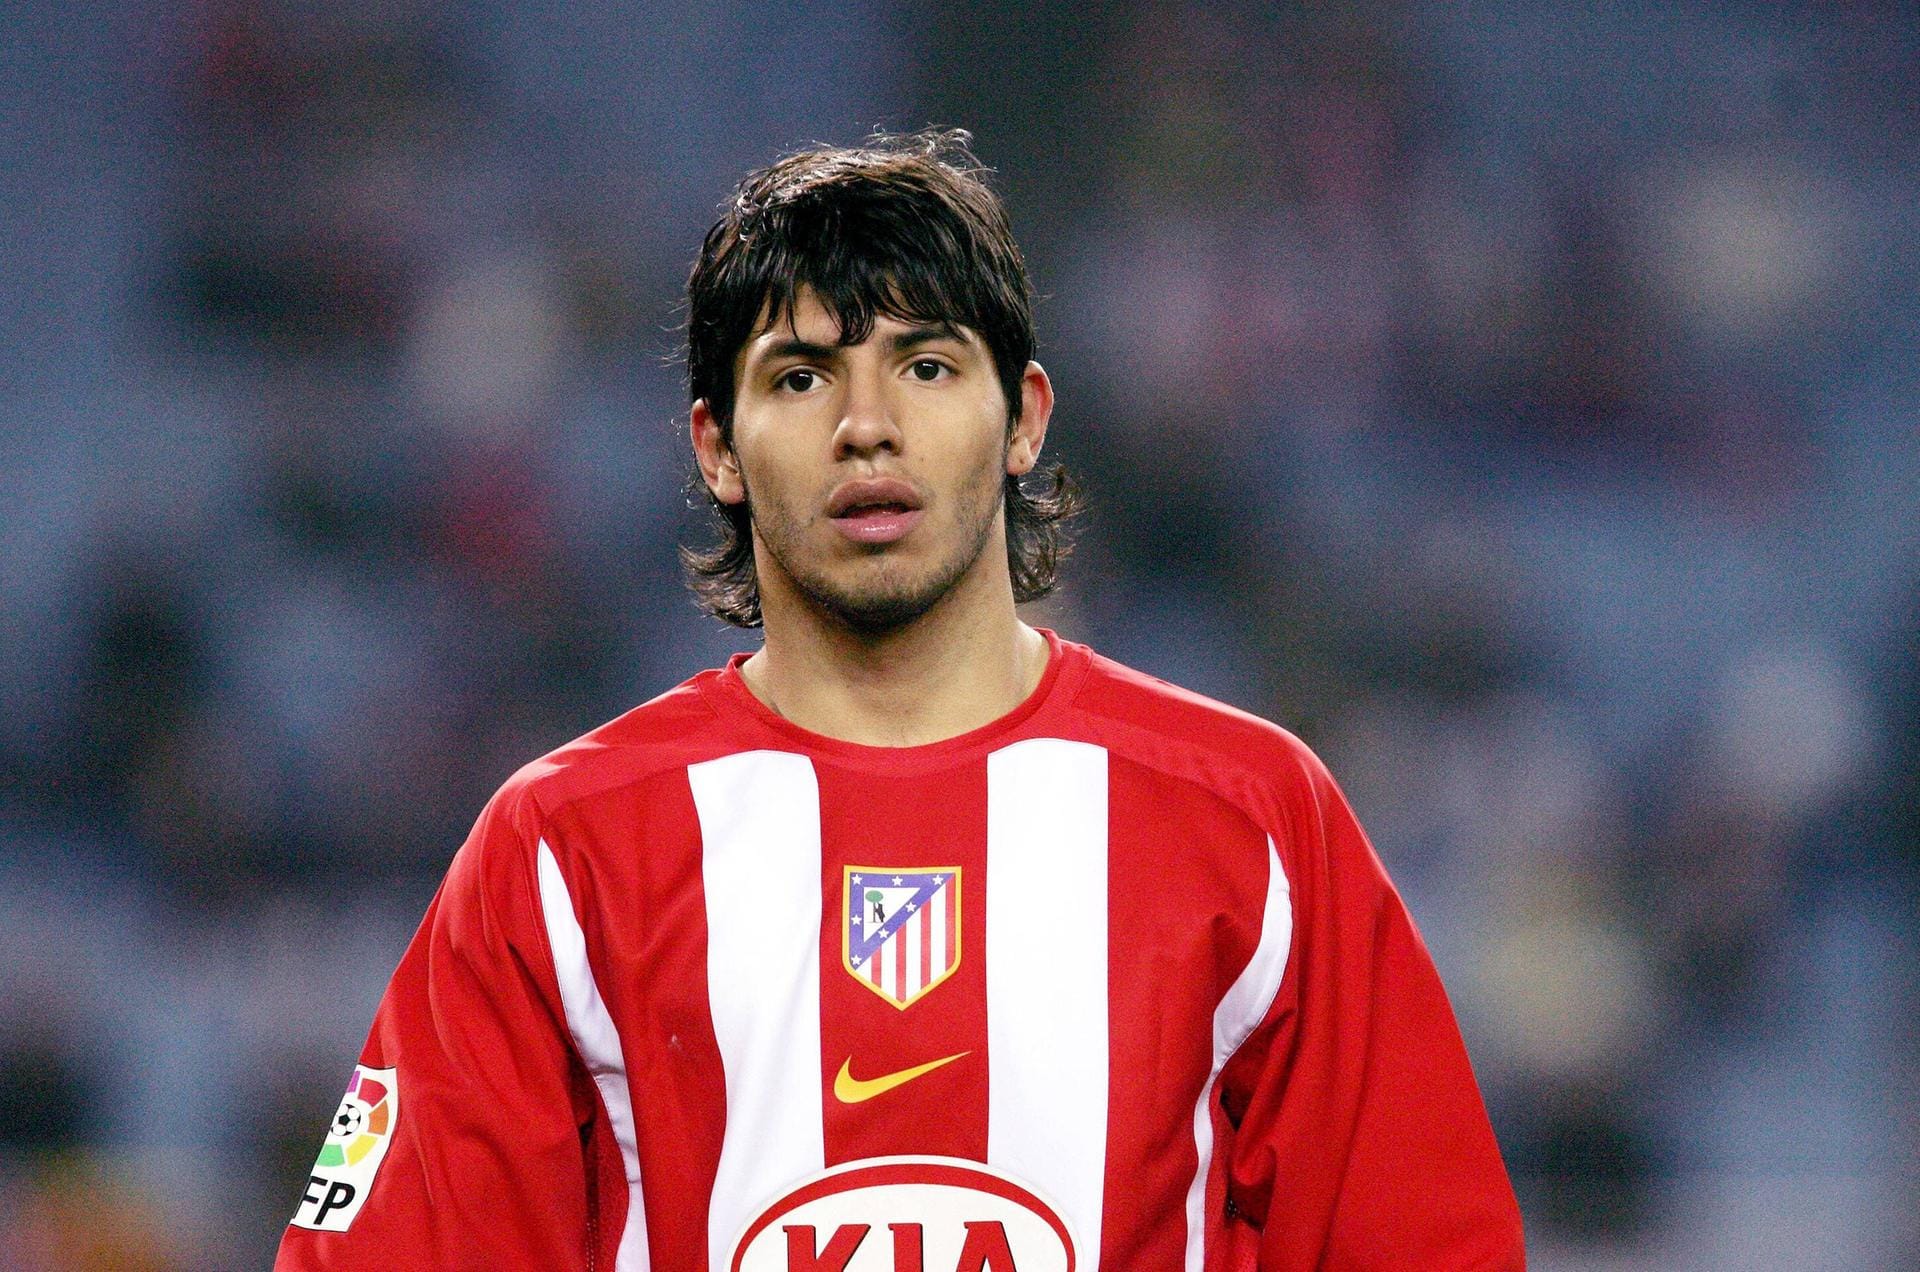 Titelträger im Jahr 2007: Sergio Agüero. Der Argentinier war ein Jahr zuvor nach Europa gekommen und sorgte bei Atletico Madrid für Aufsehen. 2010 gewann er mit den Spaniern die Europa League, ab 2011 sammelte er mit Manchester City vier englische Meisterschaften.